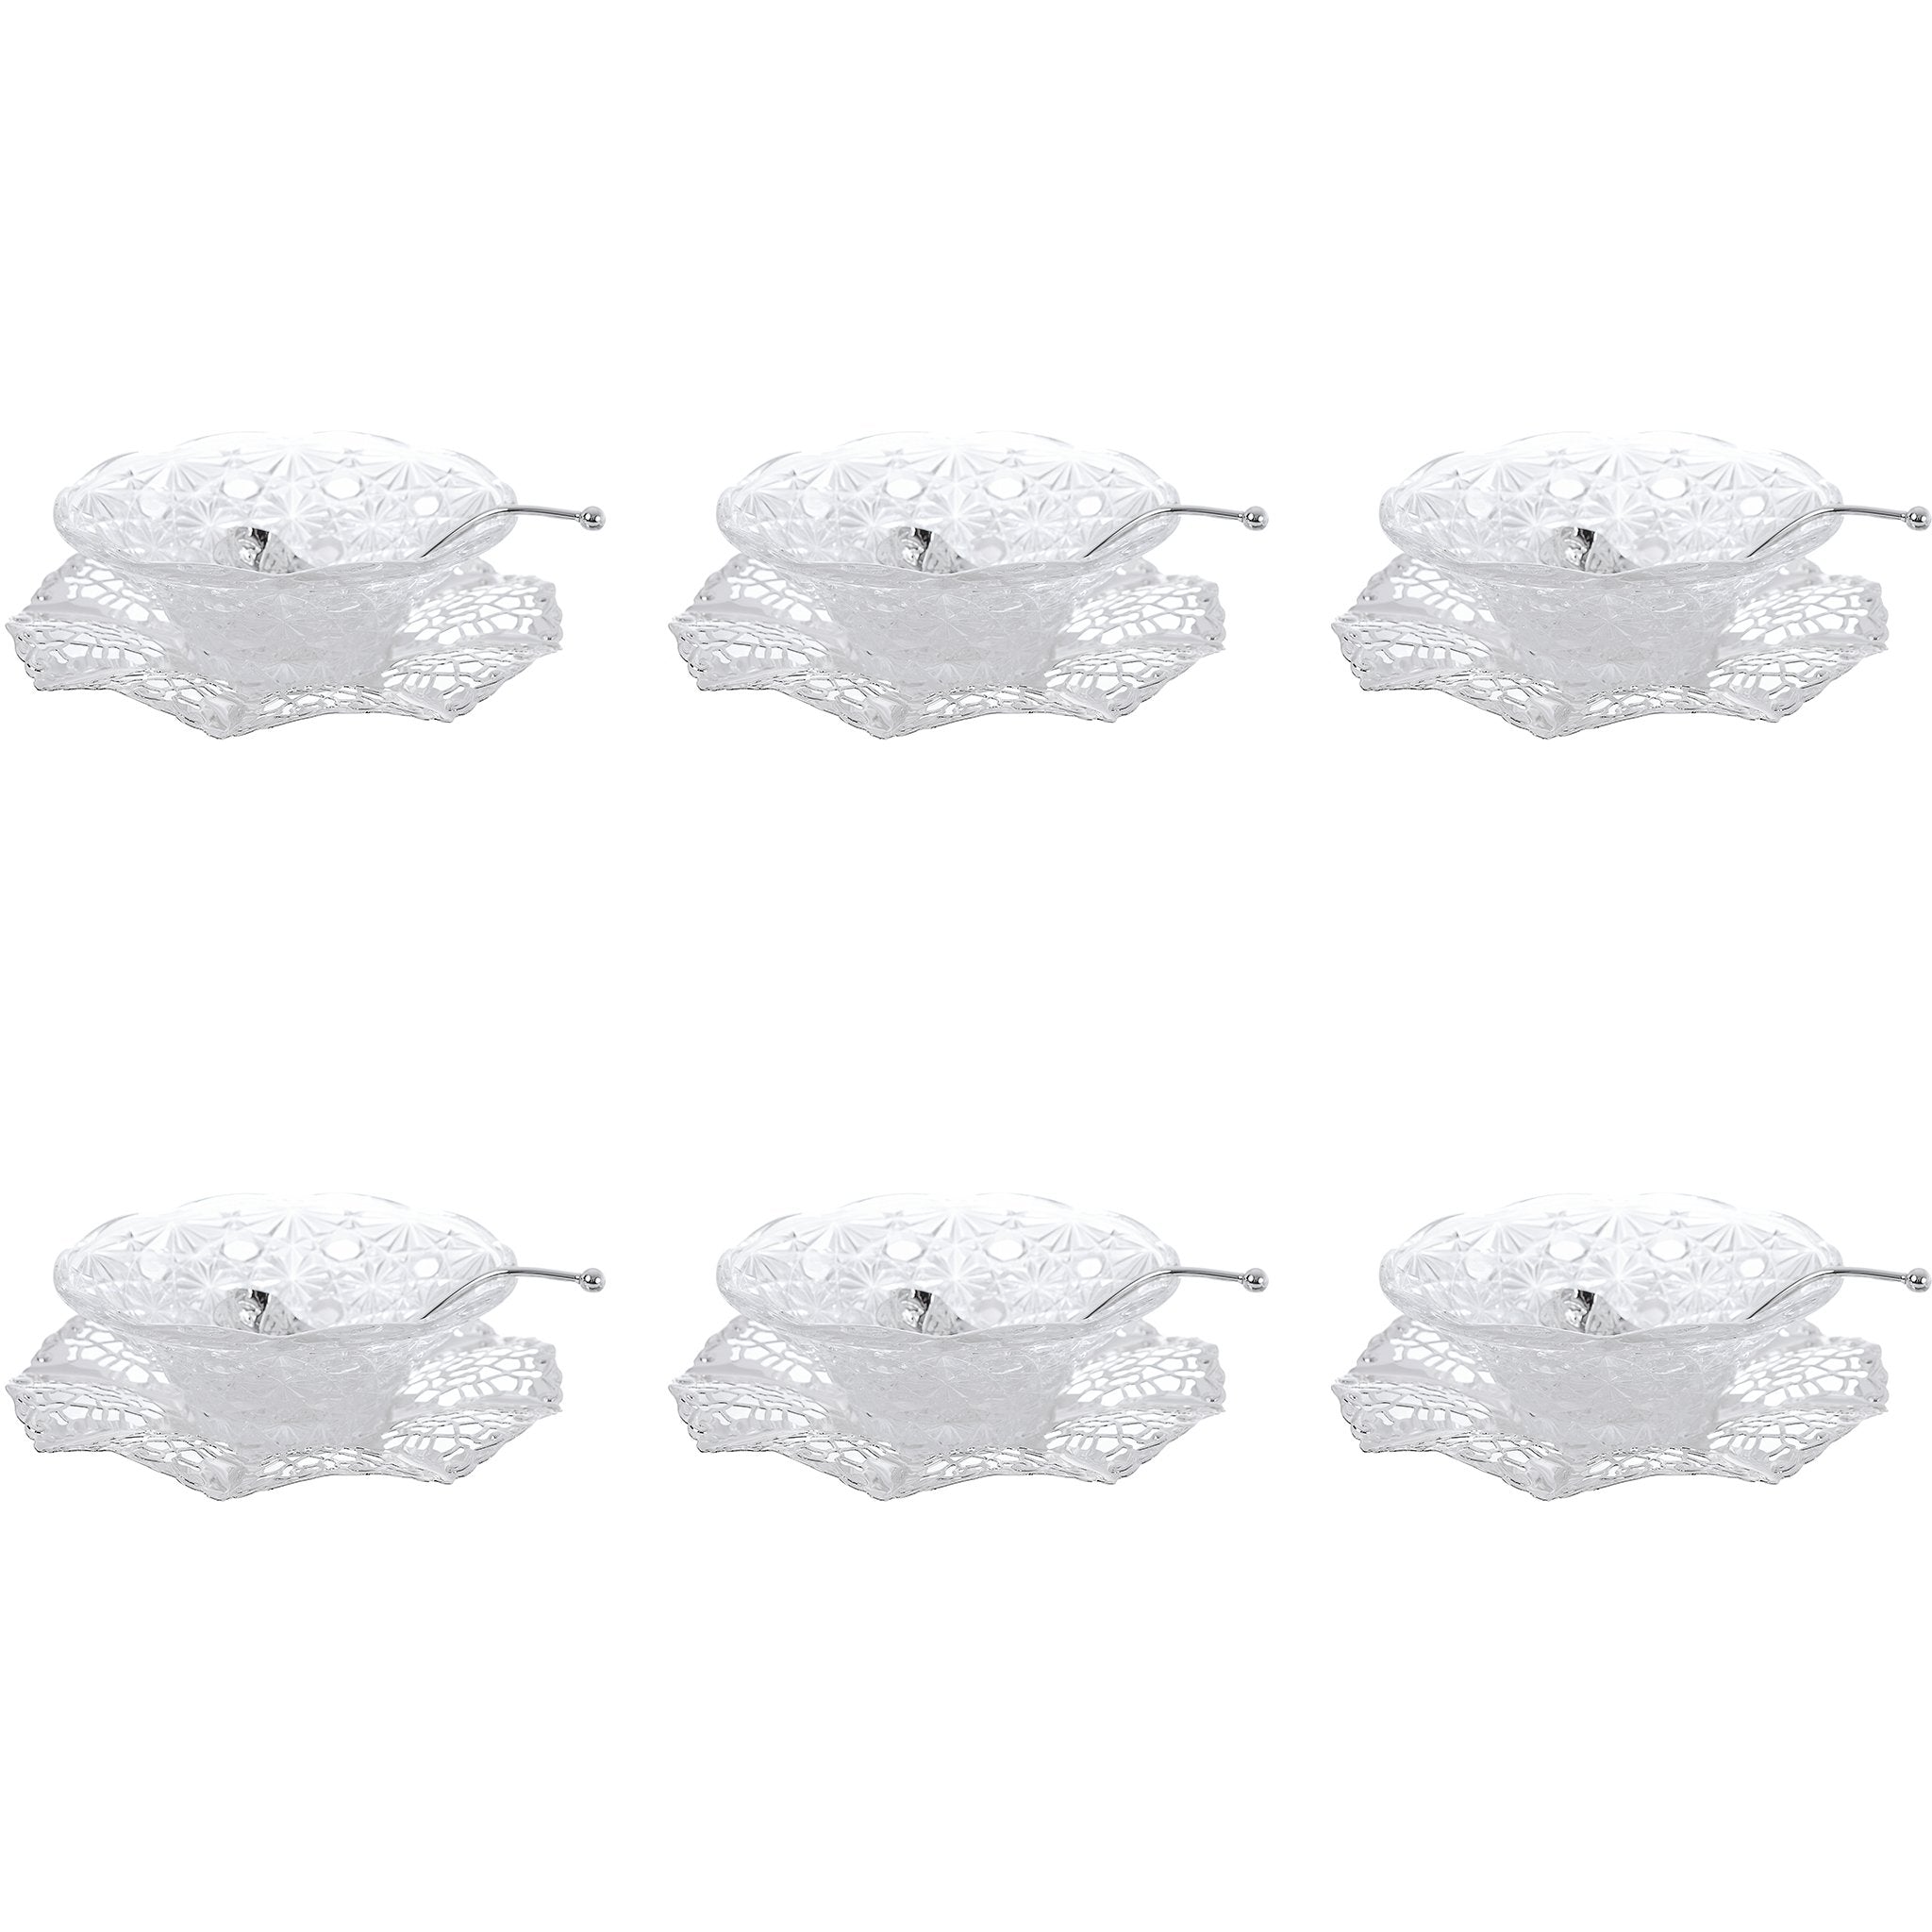 كوين آن - طقم بولة 6 قطع بالصحن والملاعق - معدن وزجاج مطلي بالفضة - 17.5 × 5.25 سم - 26000252